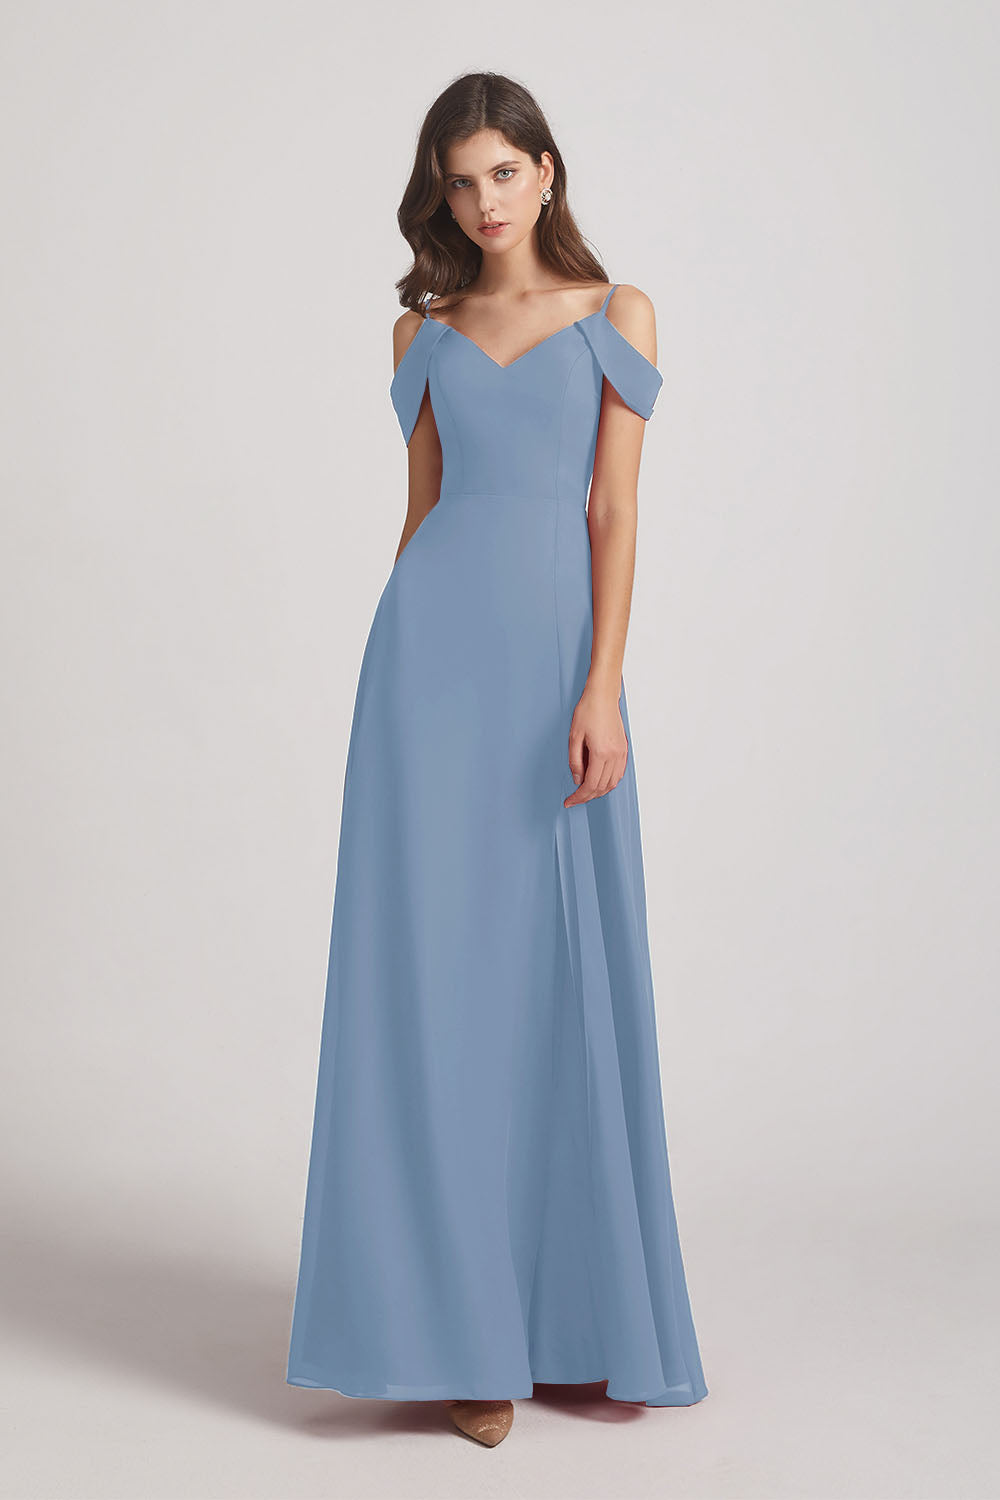 Alfa Bridal Dusty Blue Chiffon Cold Shoulder V-Neck Bridesmaid Dresses with Slit (AF0093)